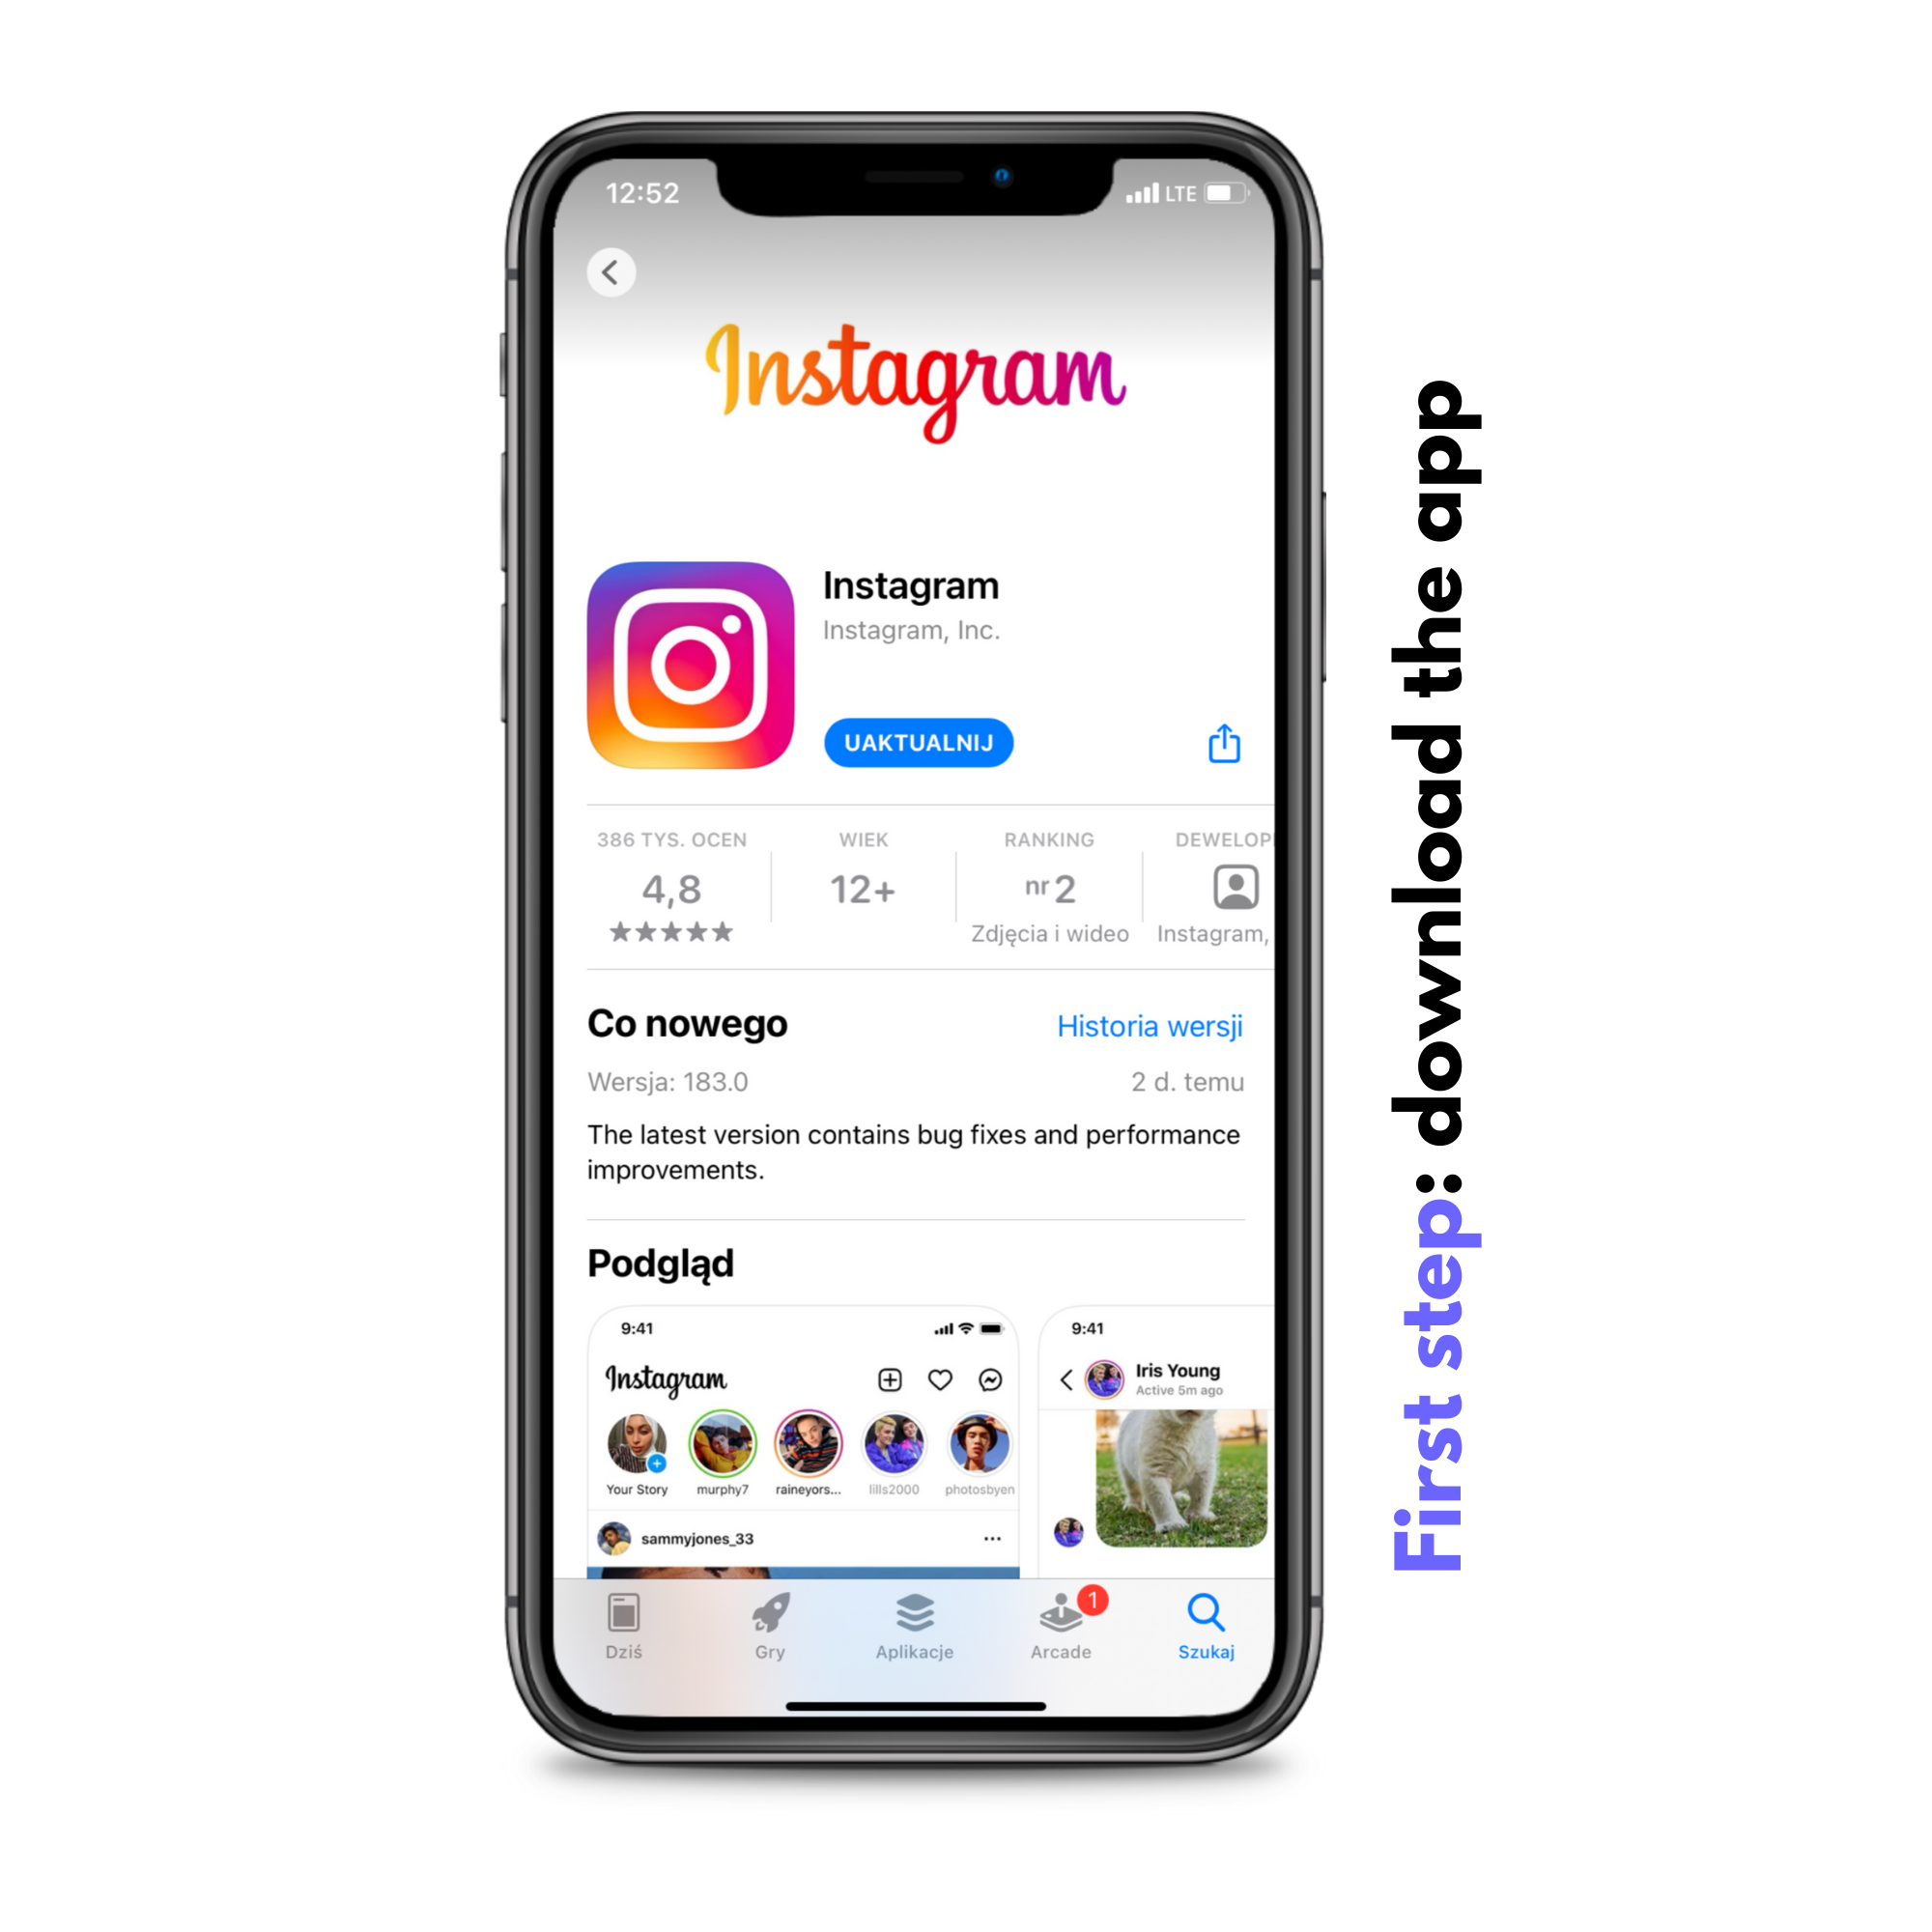 Set up Instagram Account